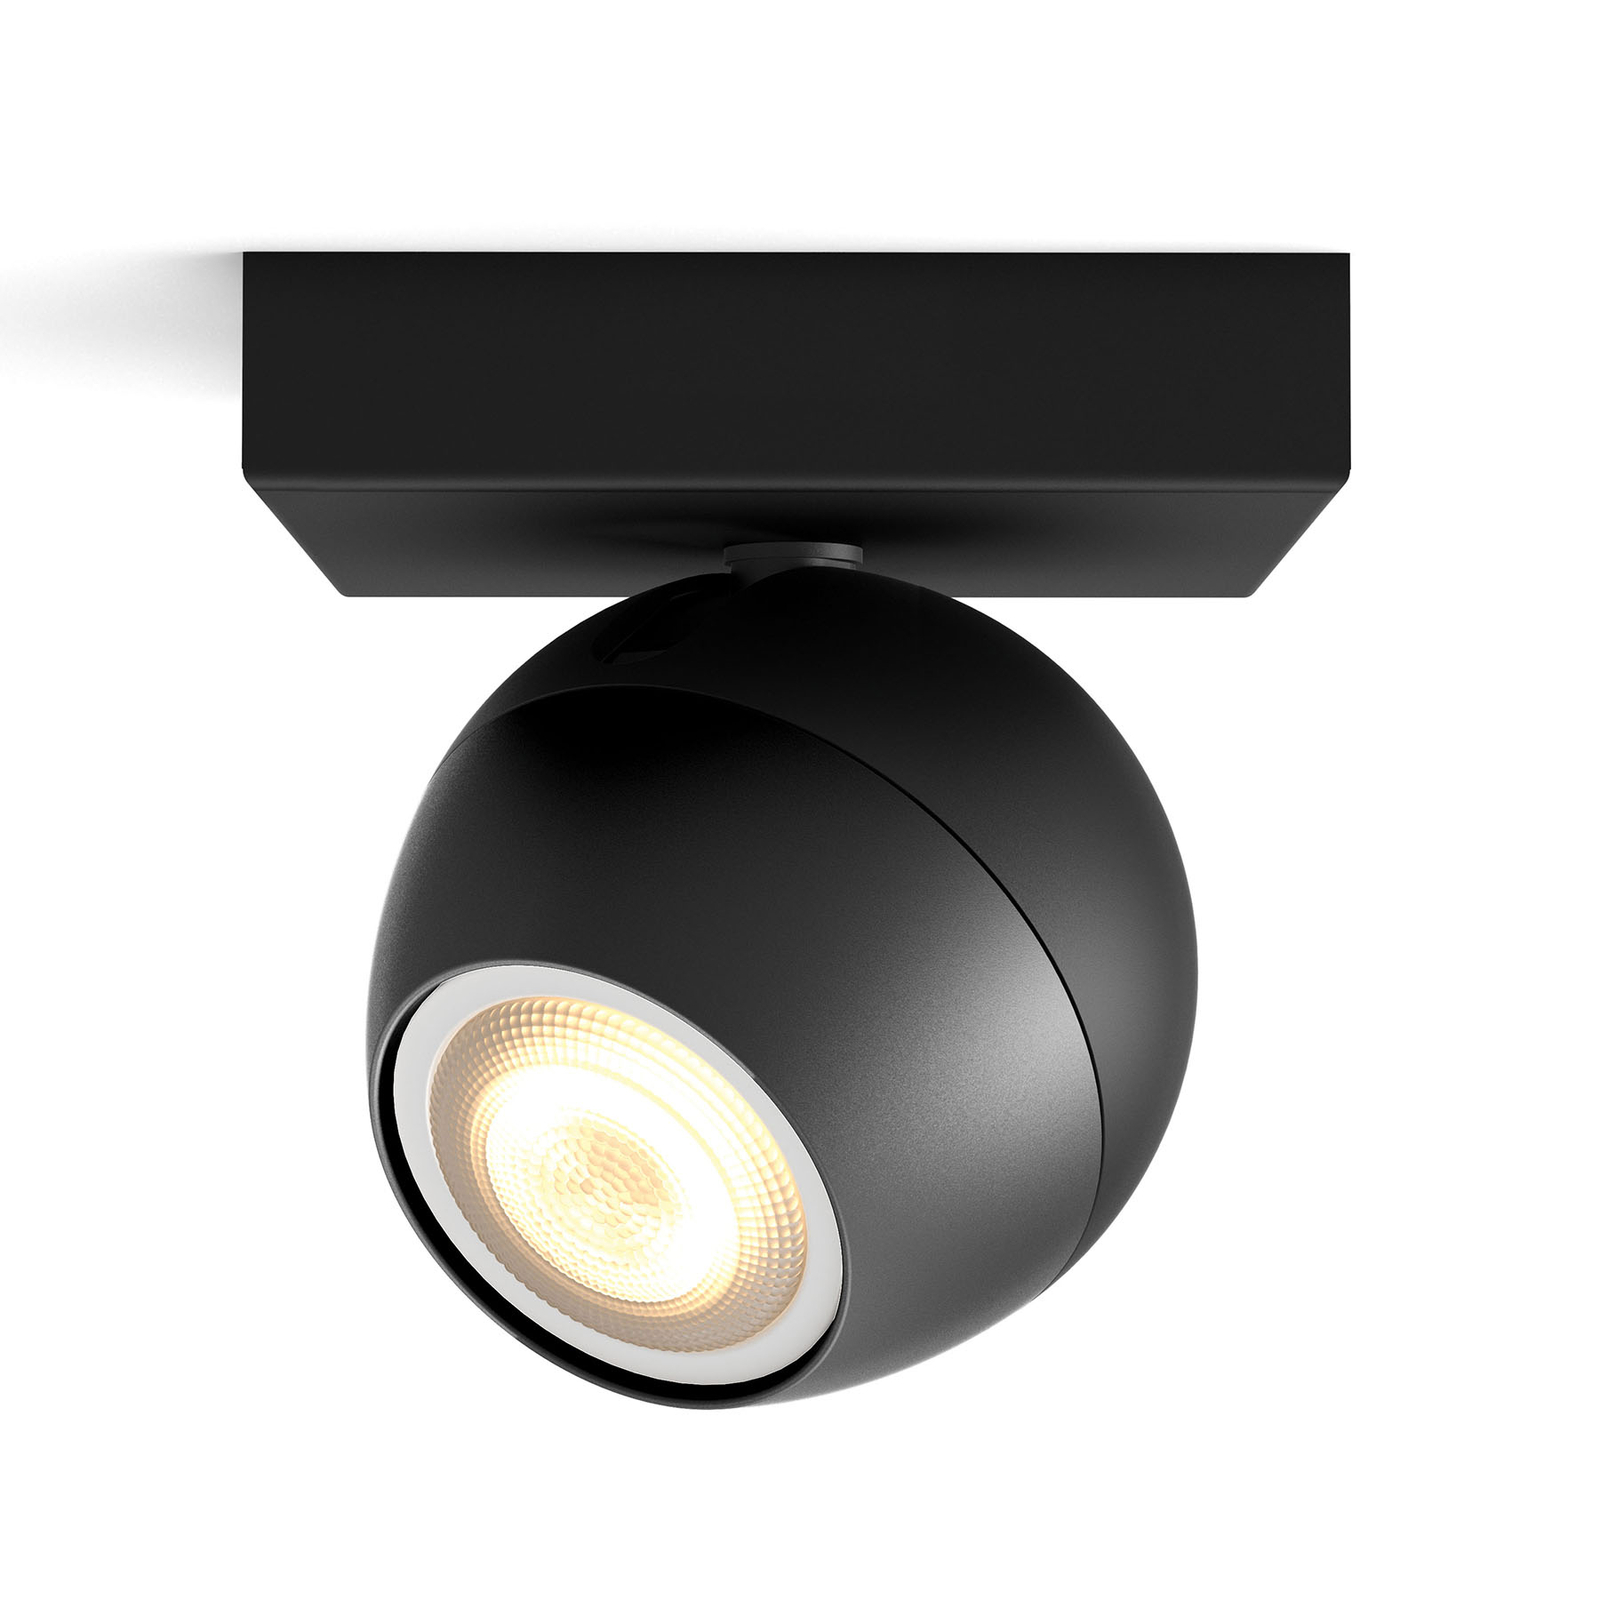 Philips Hue Buckram LED spot, black, dimmer switch